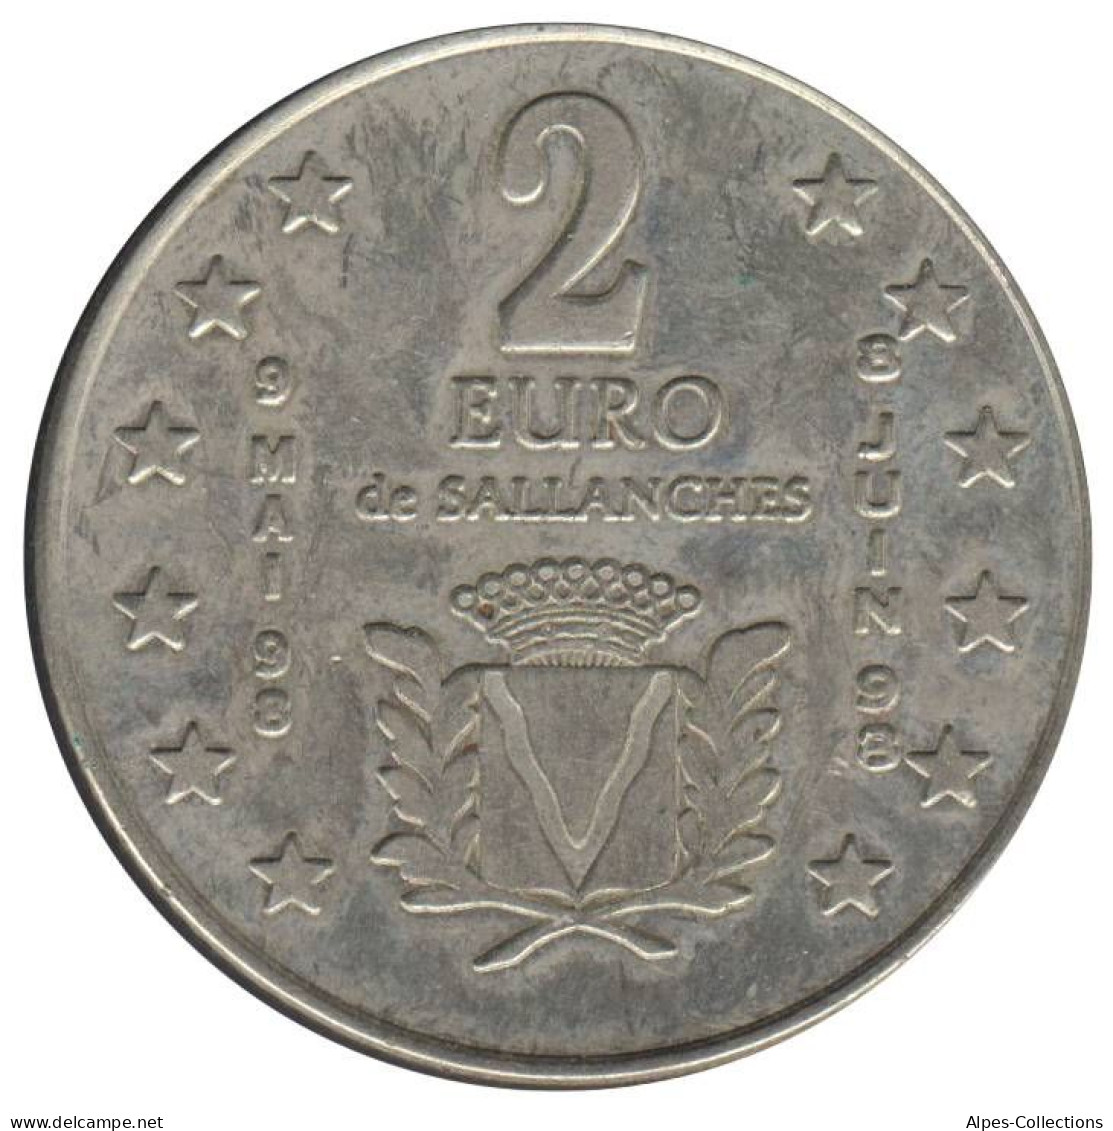 SALLANCHES - EU0020.2 - 2 EURO DES VILLES - Réf: NR - 1998 - Euros Of The Cities